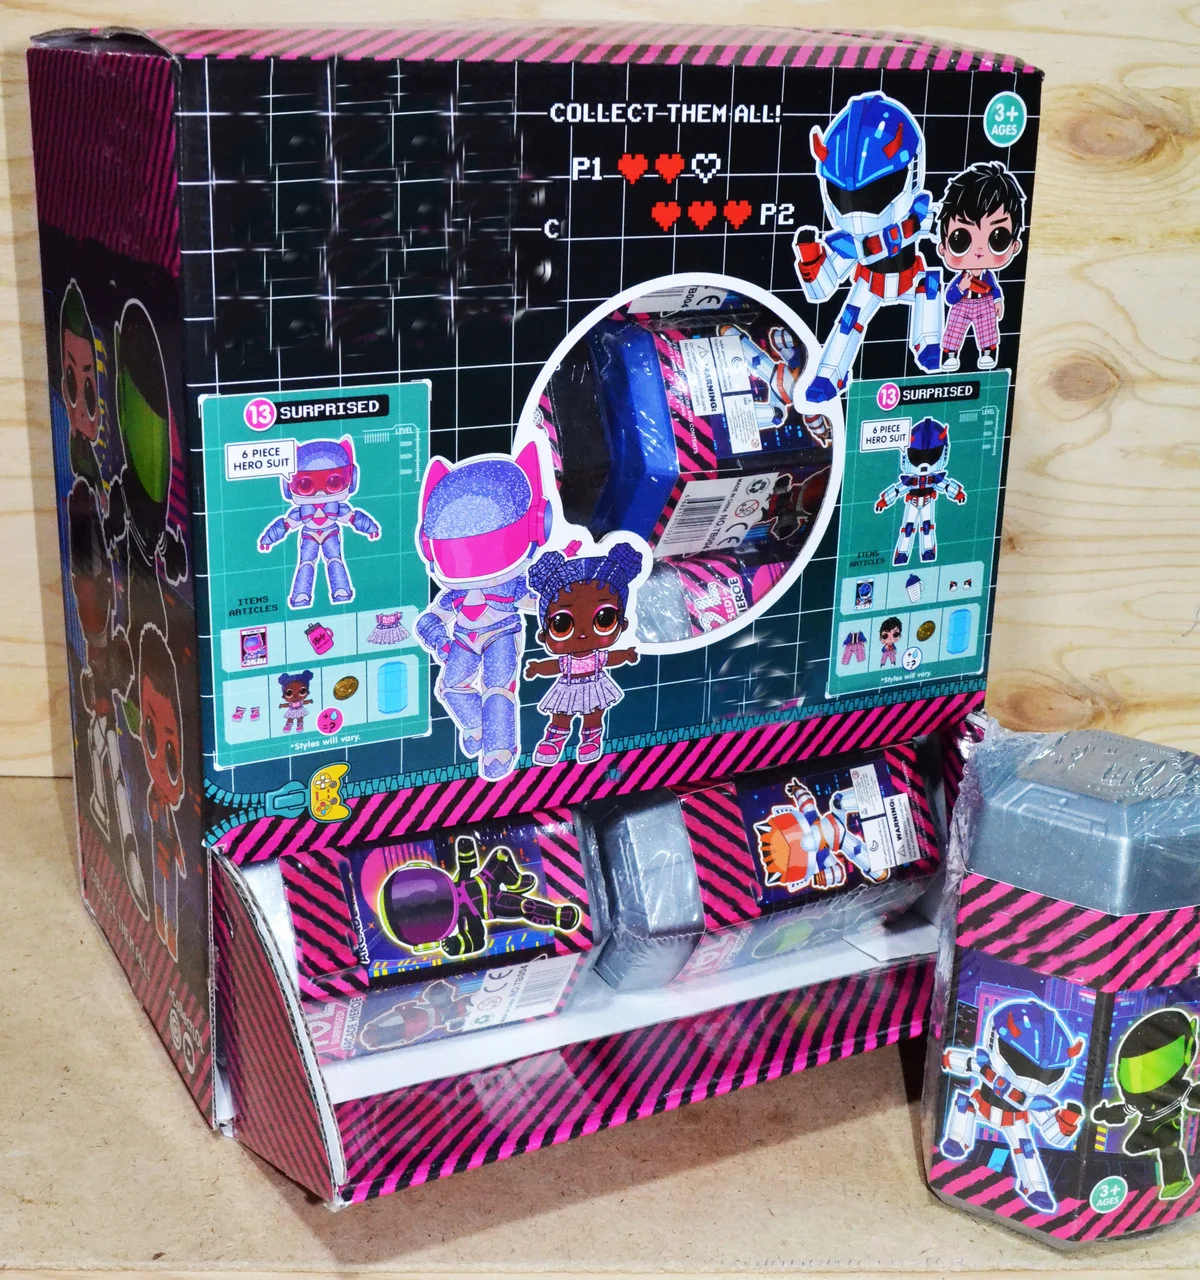 TB006 Маленькая кукла  Arcade Hero 13 аксессуаров 16шт в уп., цена за 1шт